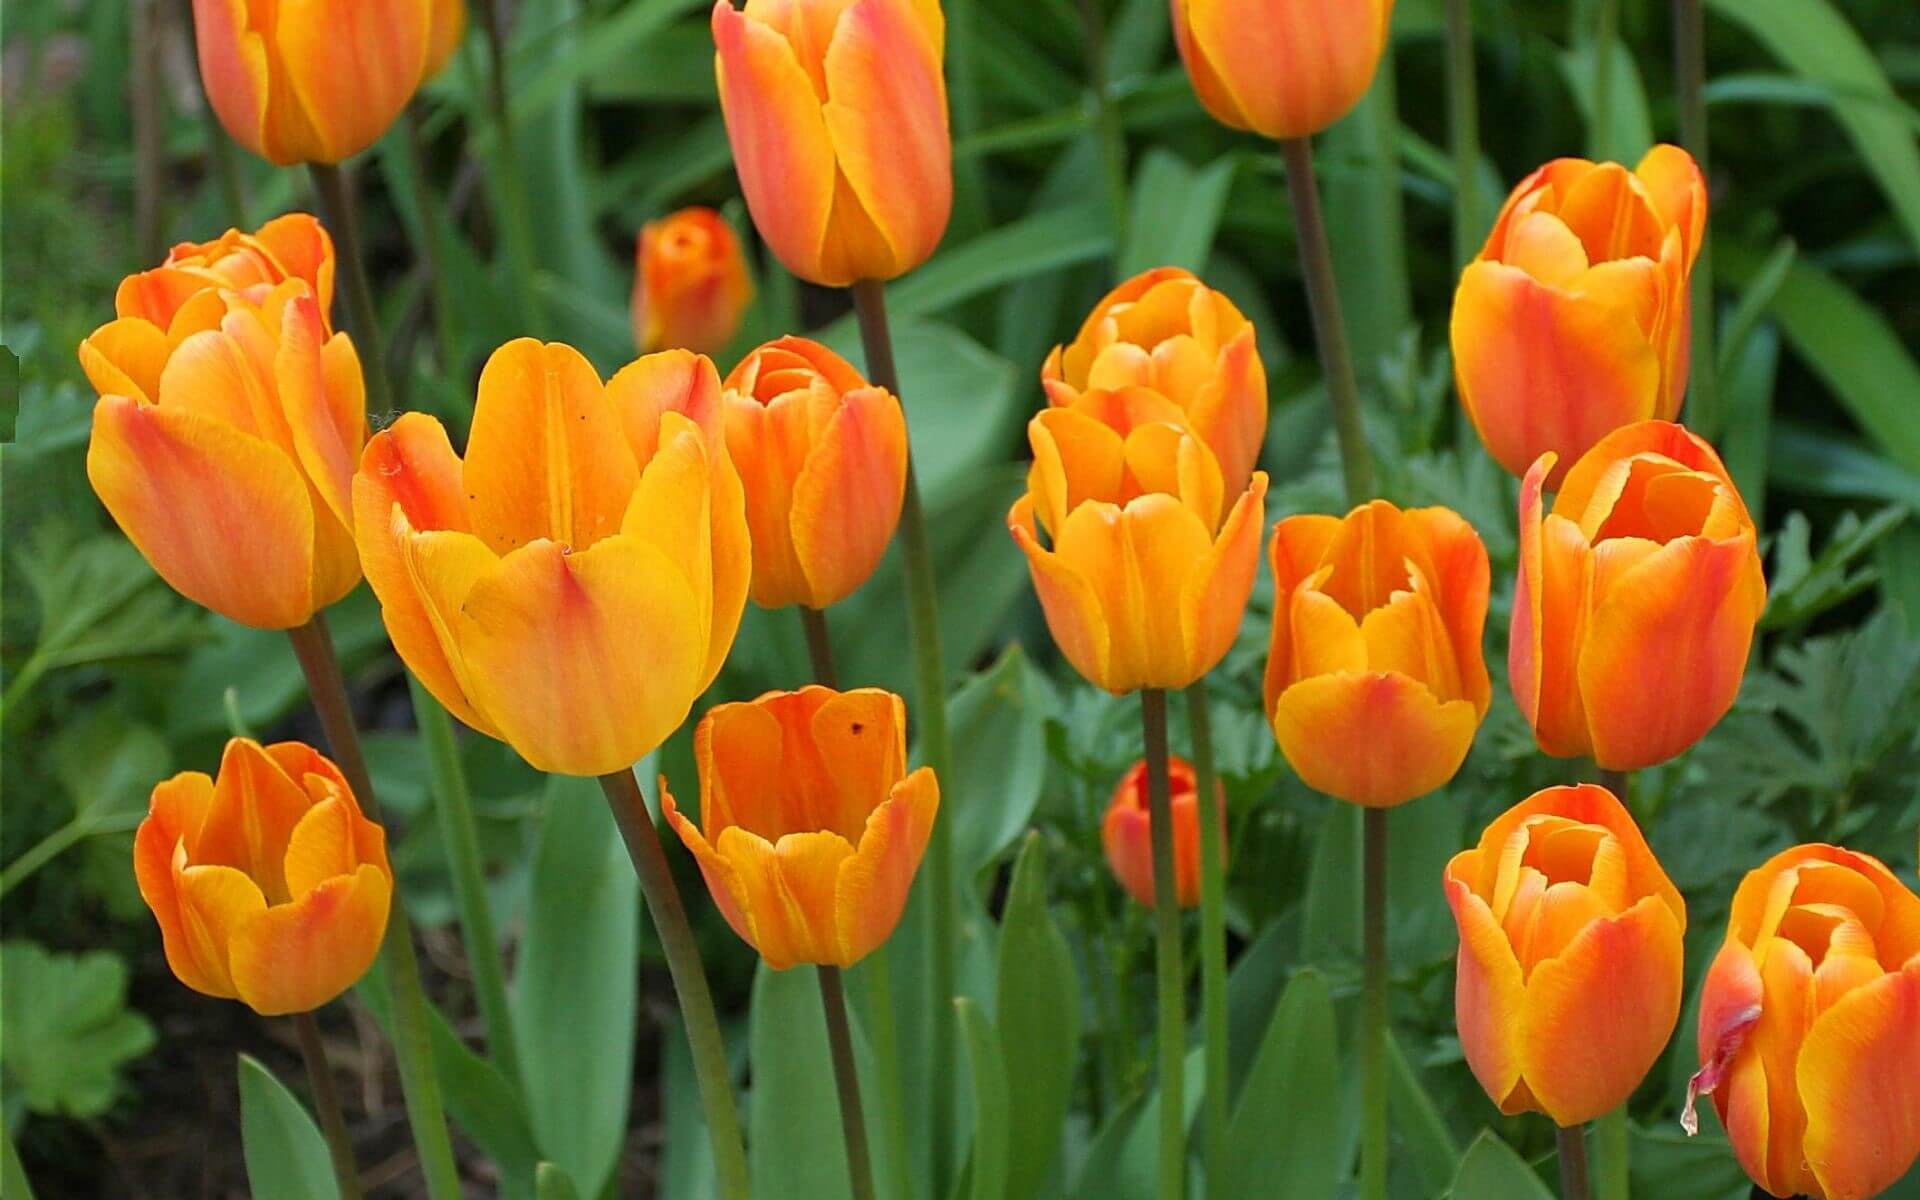 hình nền hoa tulip